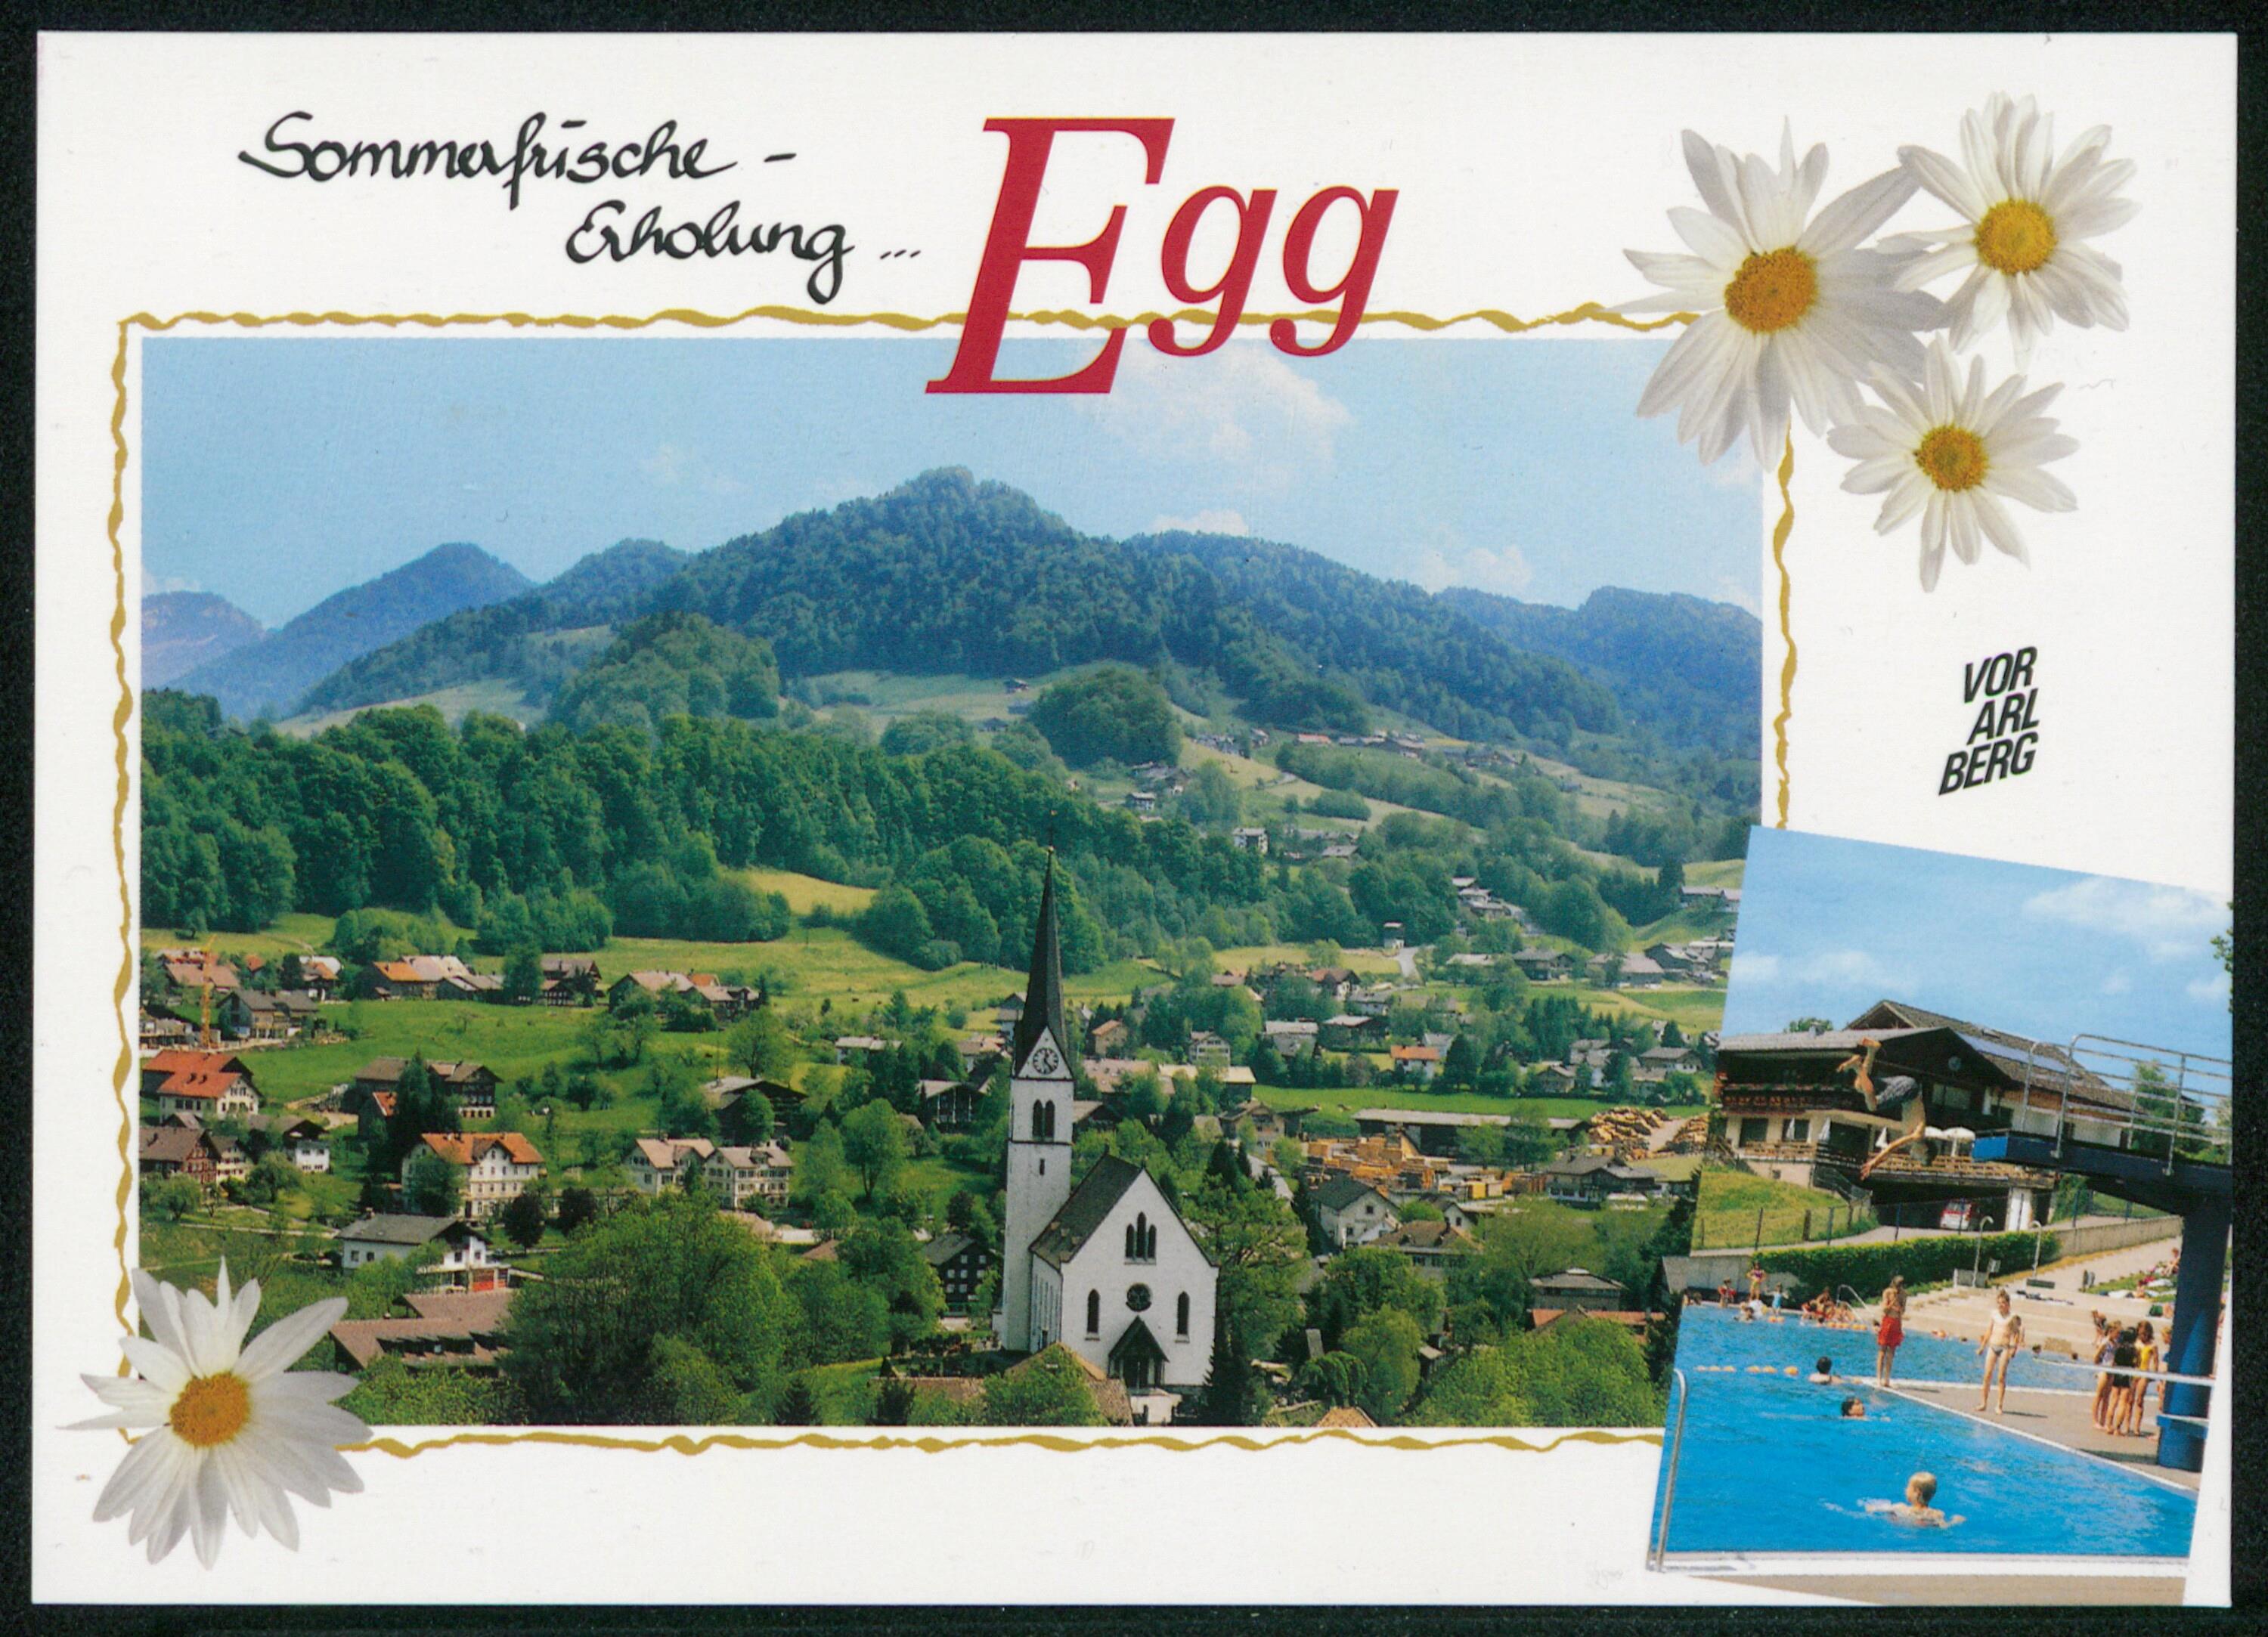 Sommerfrische - Erholung ... Egg, Vorarlberg></div>


    <hr>
    <div class=